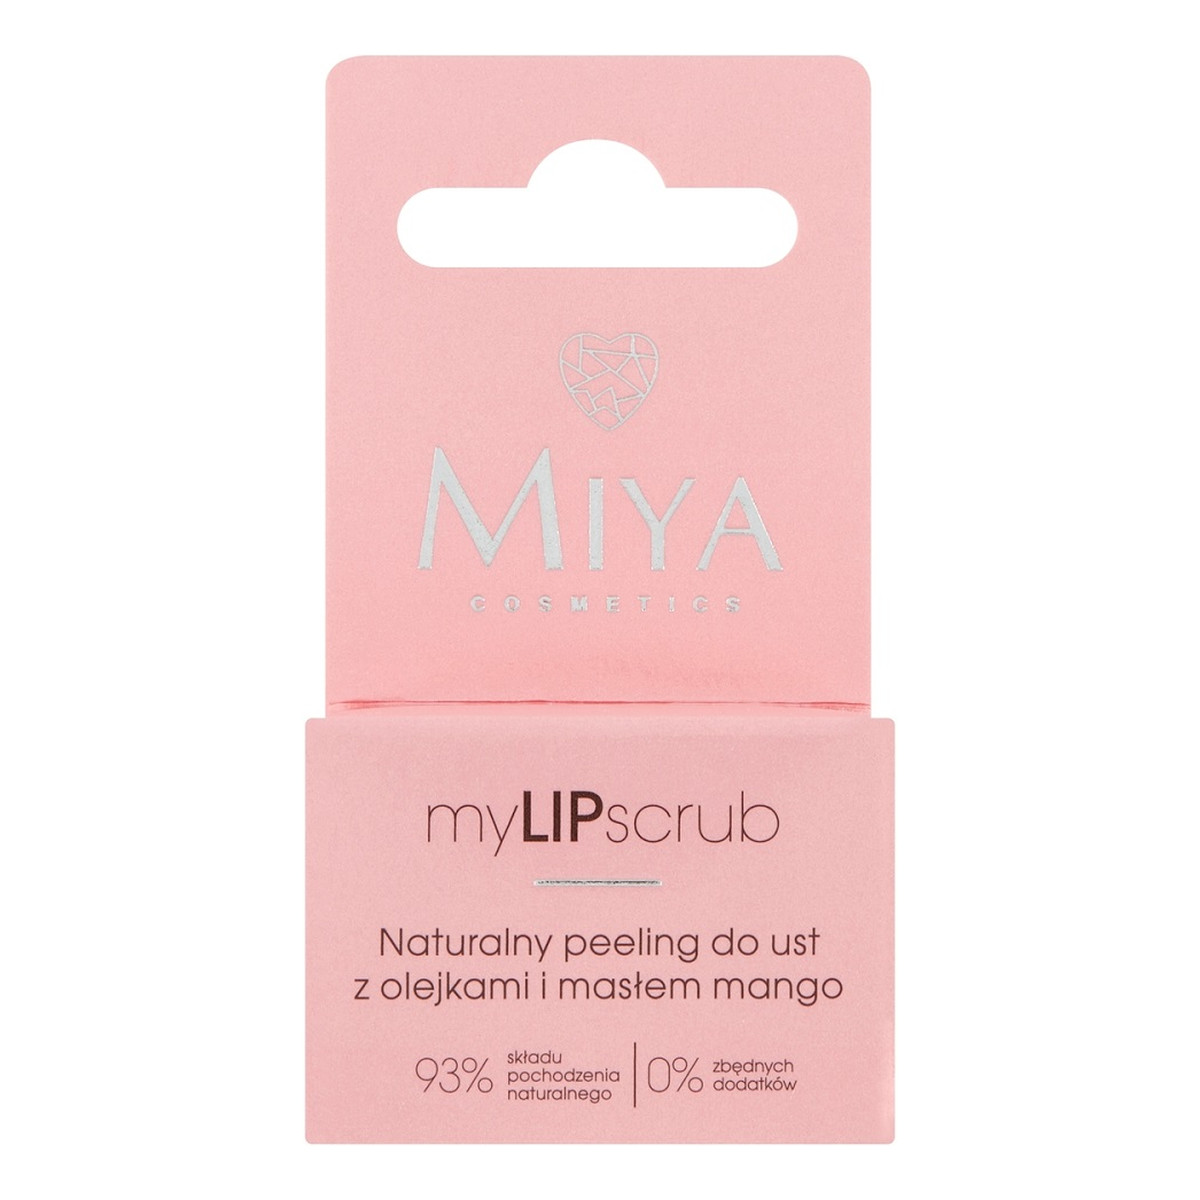 Miya Cosmetics Mylipscrub naturalny peeling do ust z olejkami i masłem mango 10g